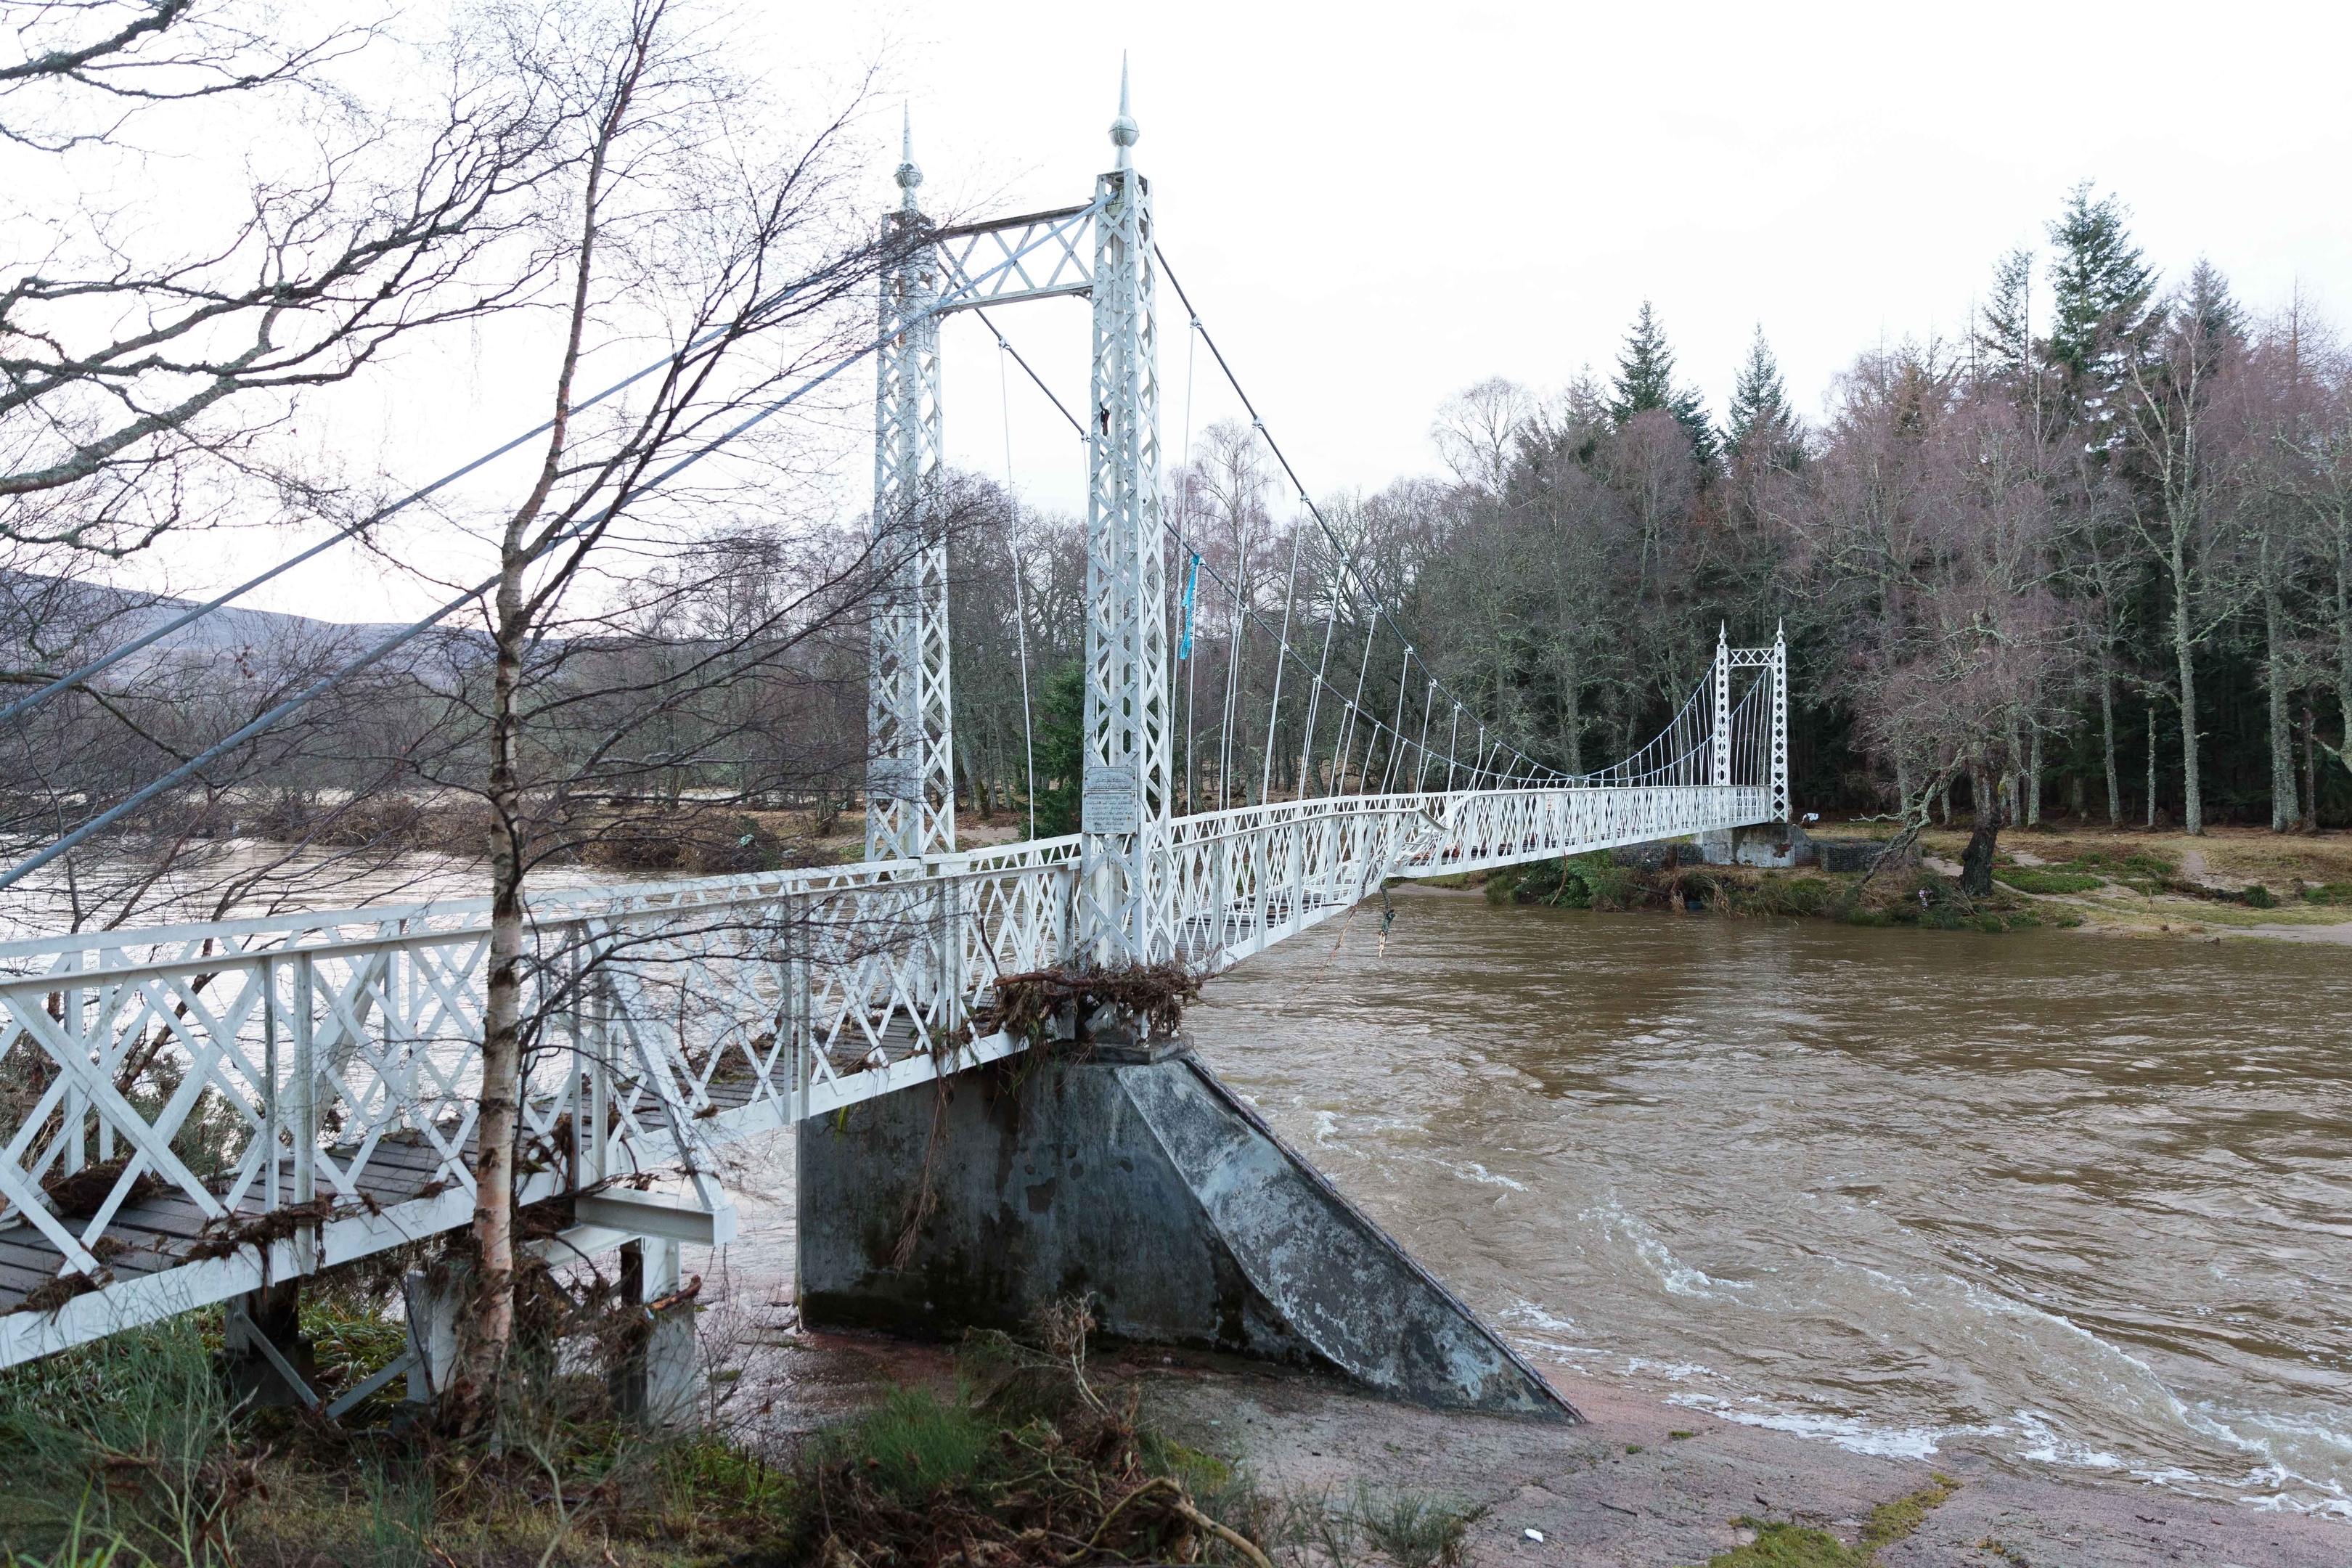  The Bridge at Cambus O'May, bent but still standing  